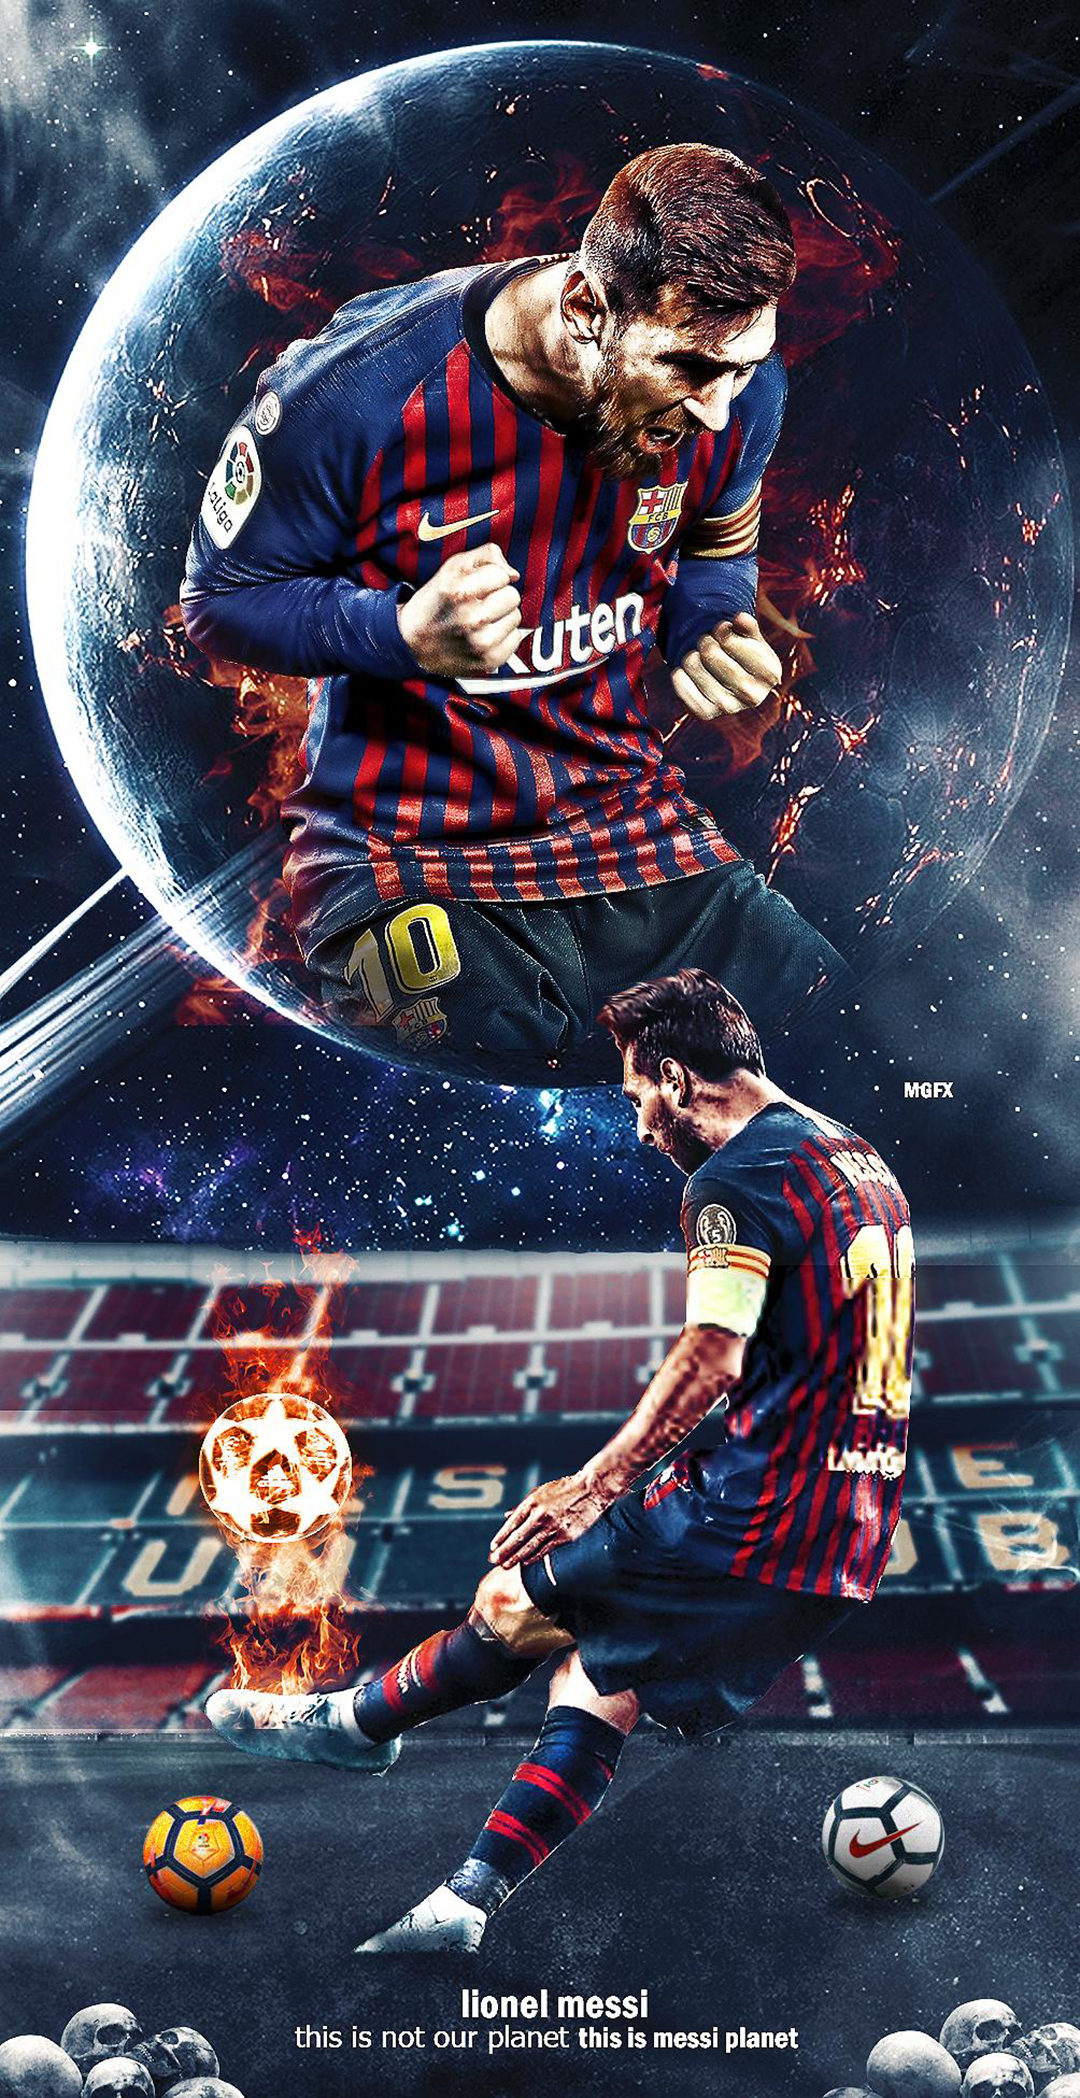 Đừng bỏ lỡ hình nền 3D đầy sức sống với hình ảnh Messi cùng đội Barca màu mè, kích thích sự sáng tạo và đam mê bóng đá của bạn.